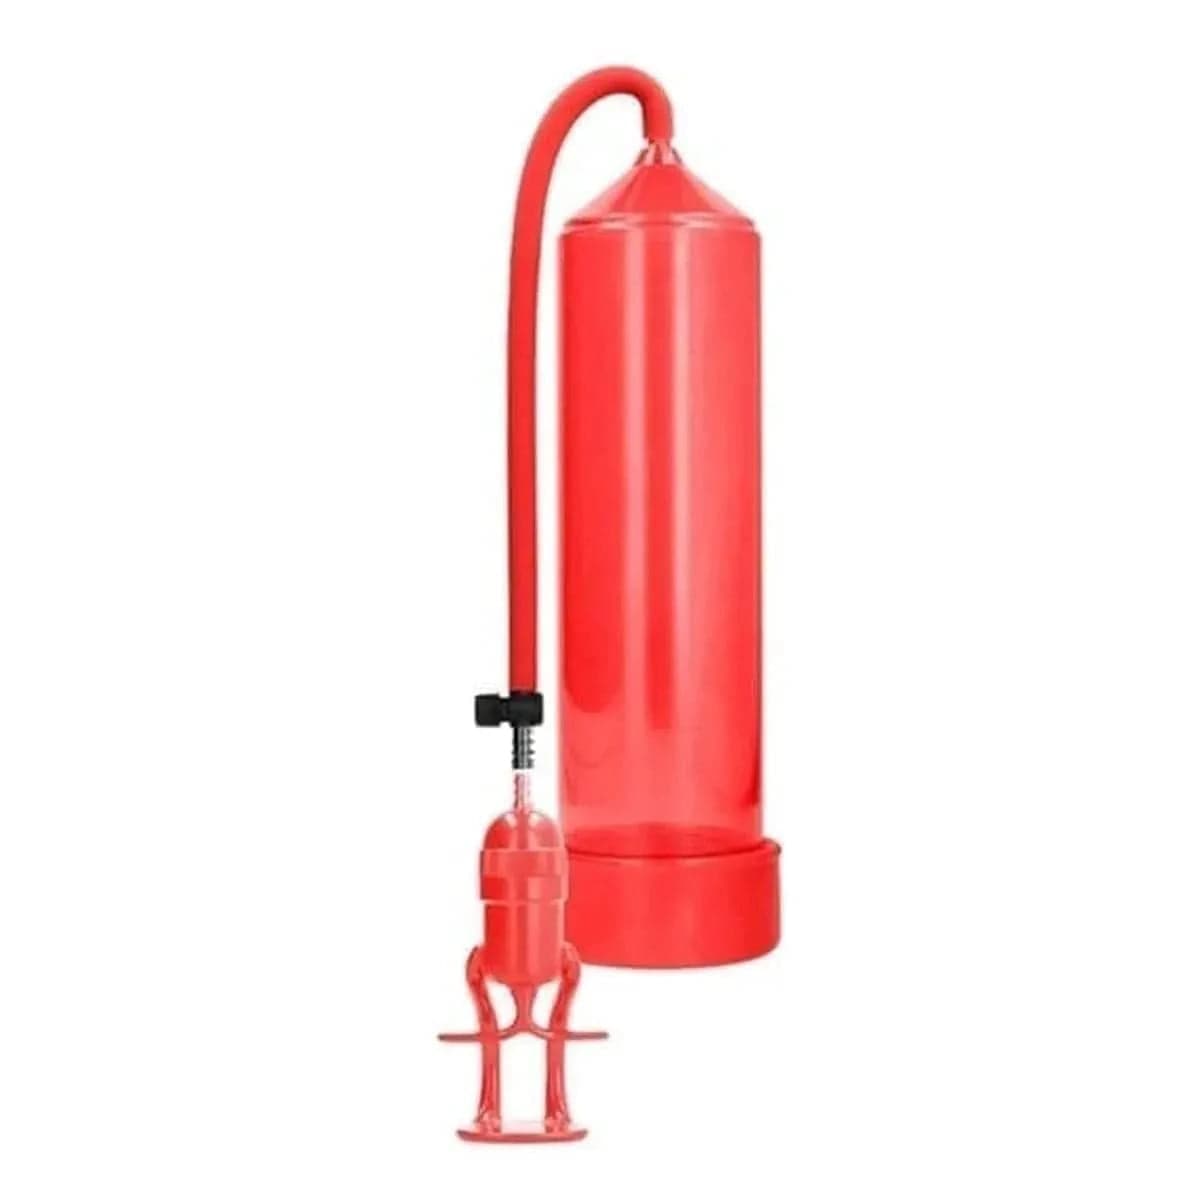 Deluxe Beginner Pump Vermelho, Sucção Muito Forte, 23cm Ø6cm  Pumped   